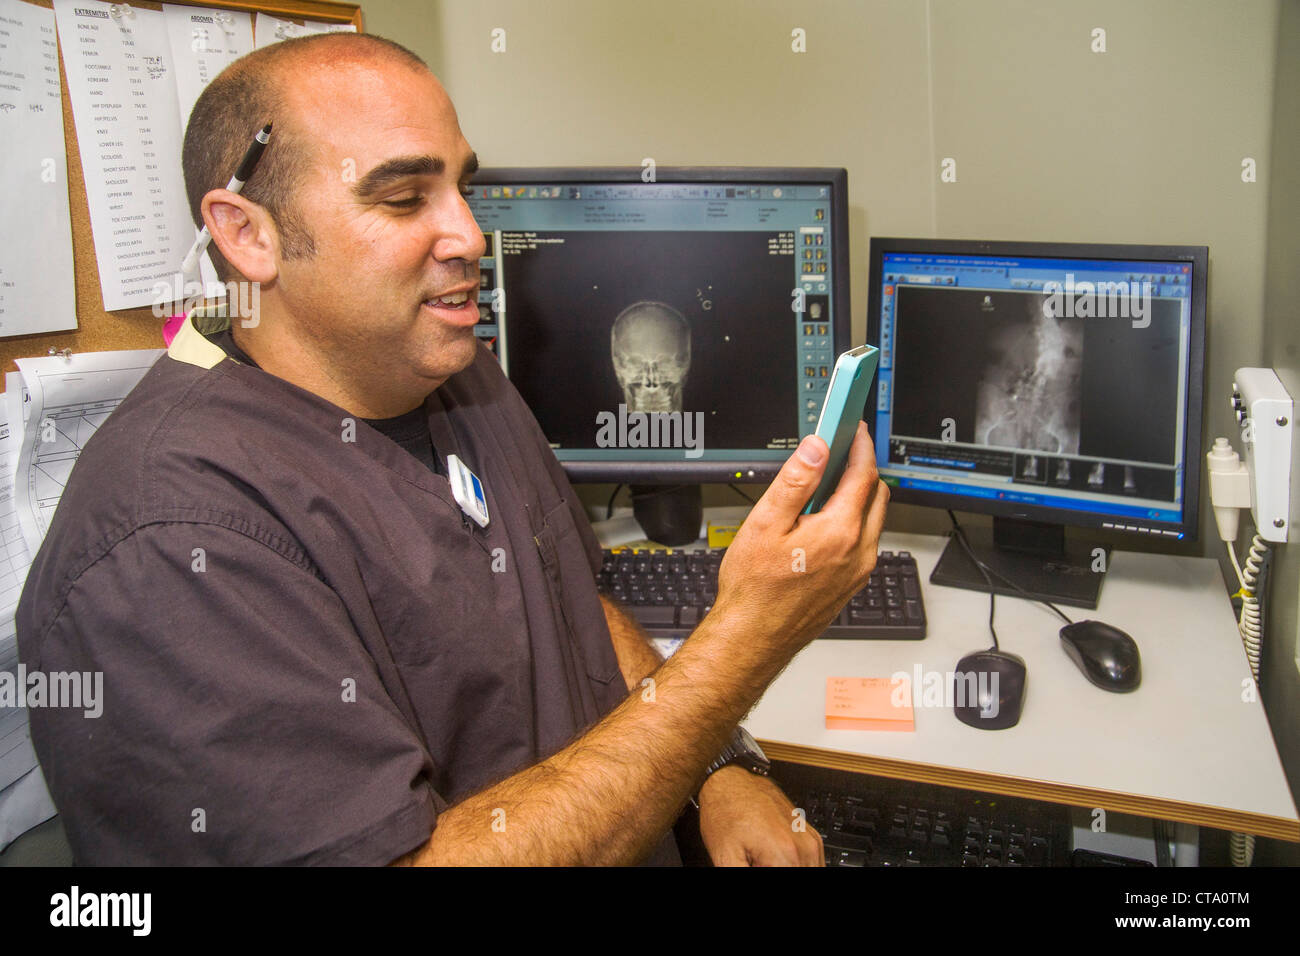 Ein Radiologe diktiert in ein iPhone an einen digitalen Arbeitsplatz in einer Klinik in Laguna Hills, CA. Beachten Sie die Monitore im Hintergrund. Stockfoto